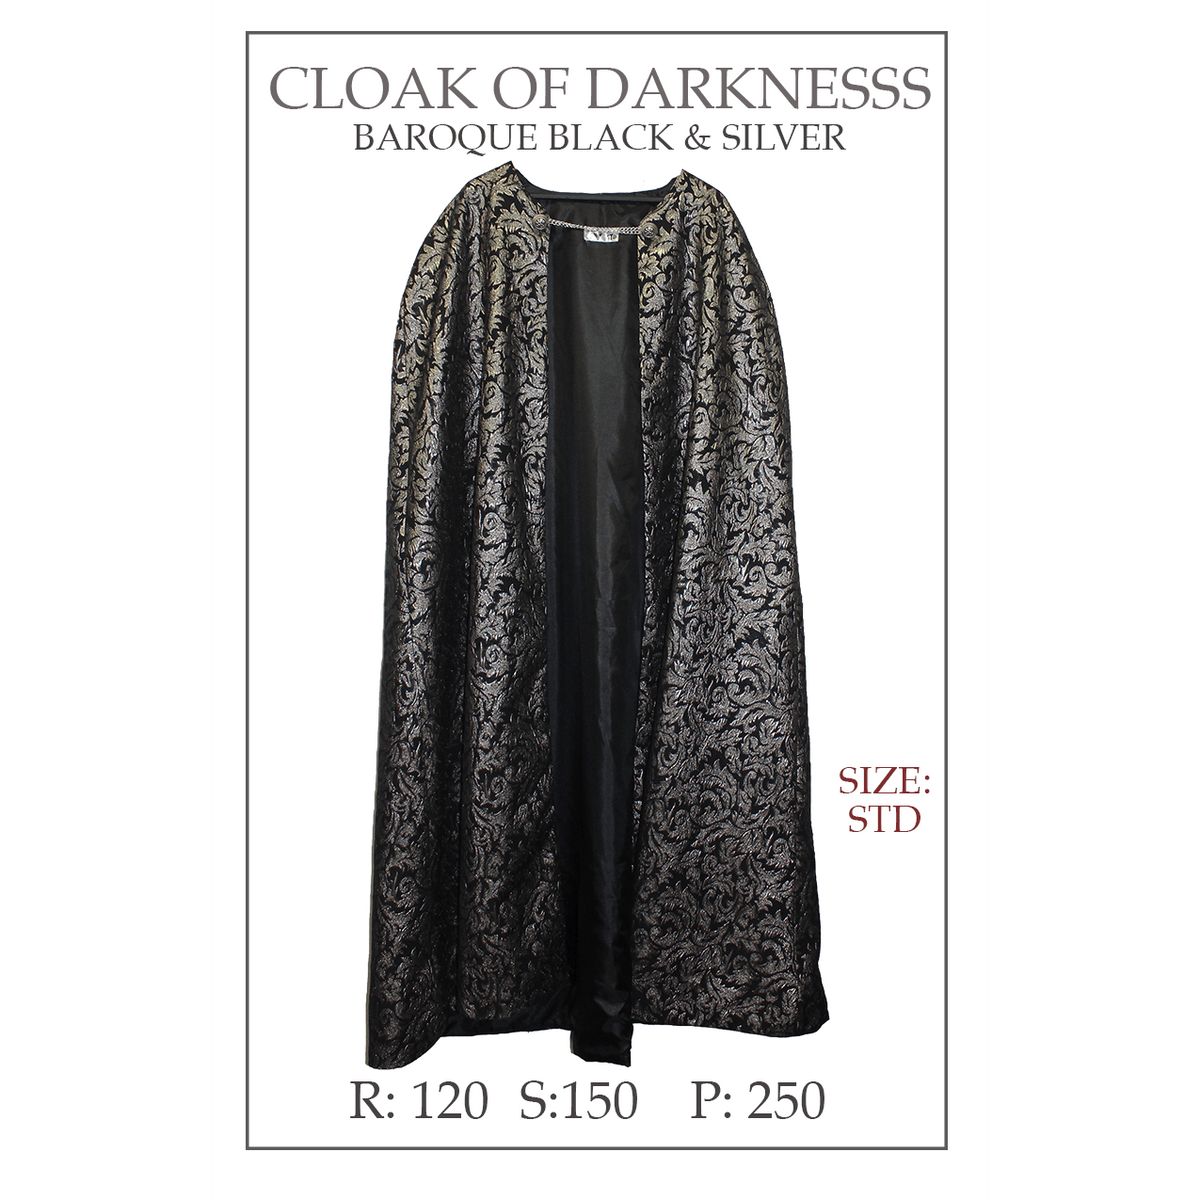 Cloak Of Darkness, Baroque Black & Silver Cloak